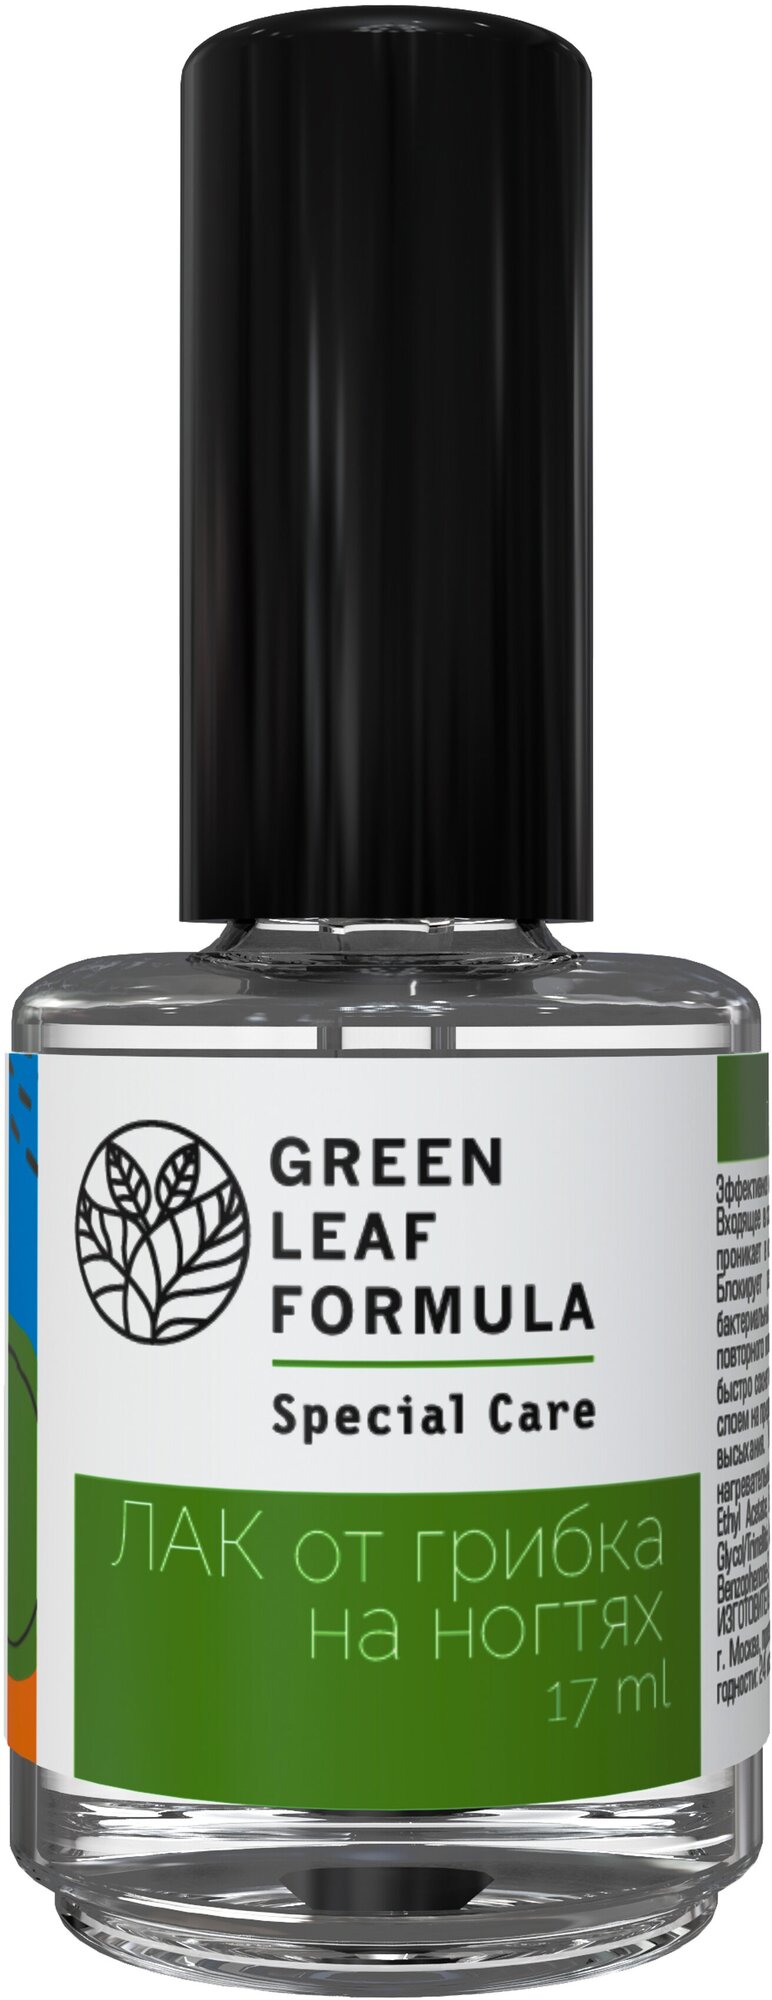 Green Leaf Formula лак от грибка на ногтях